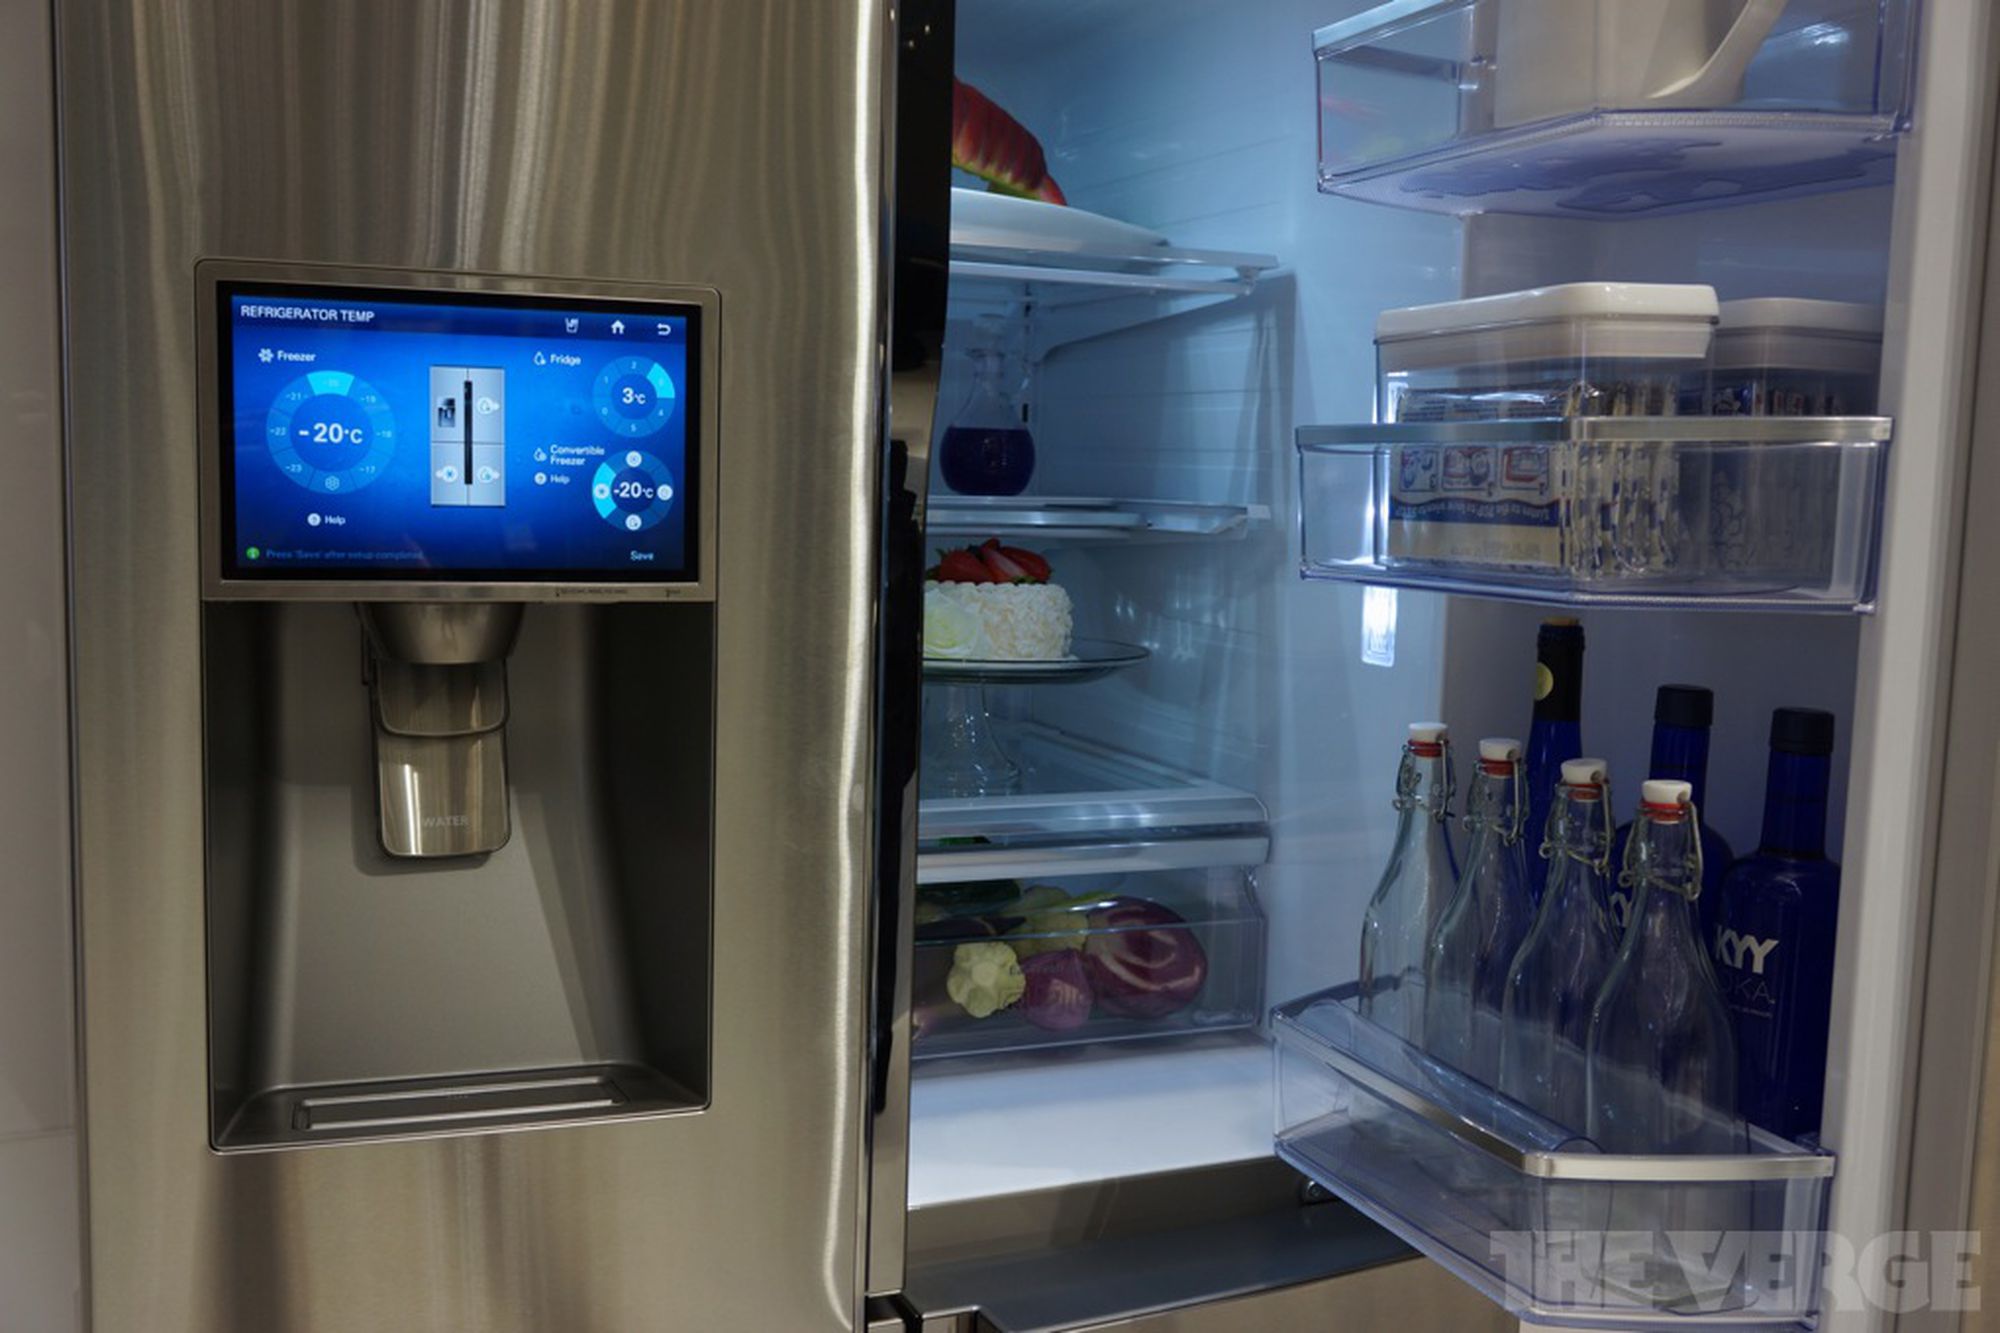 How To Fix The Error Code 27E For Samsung Refrigerator